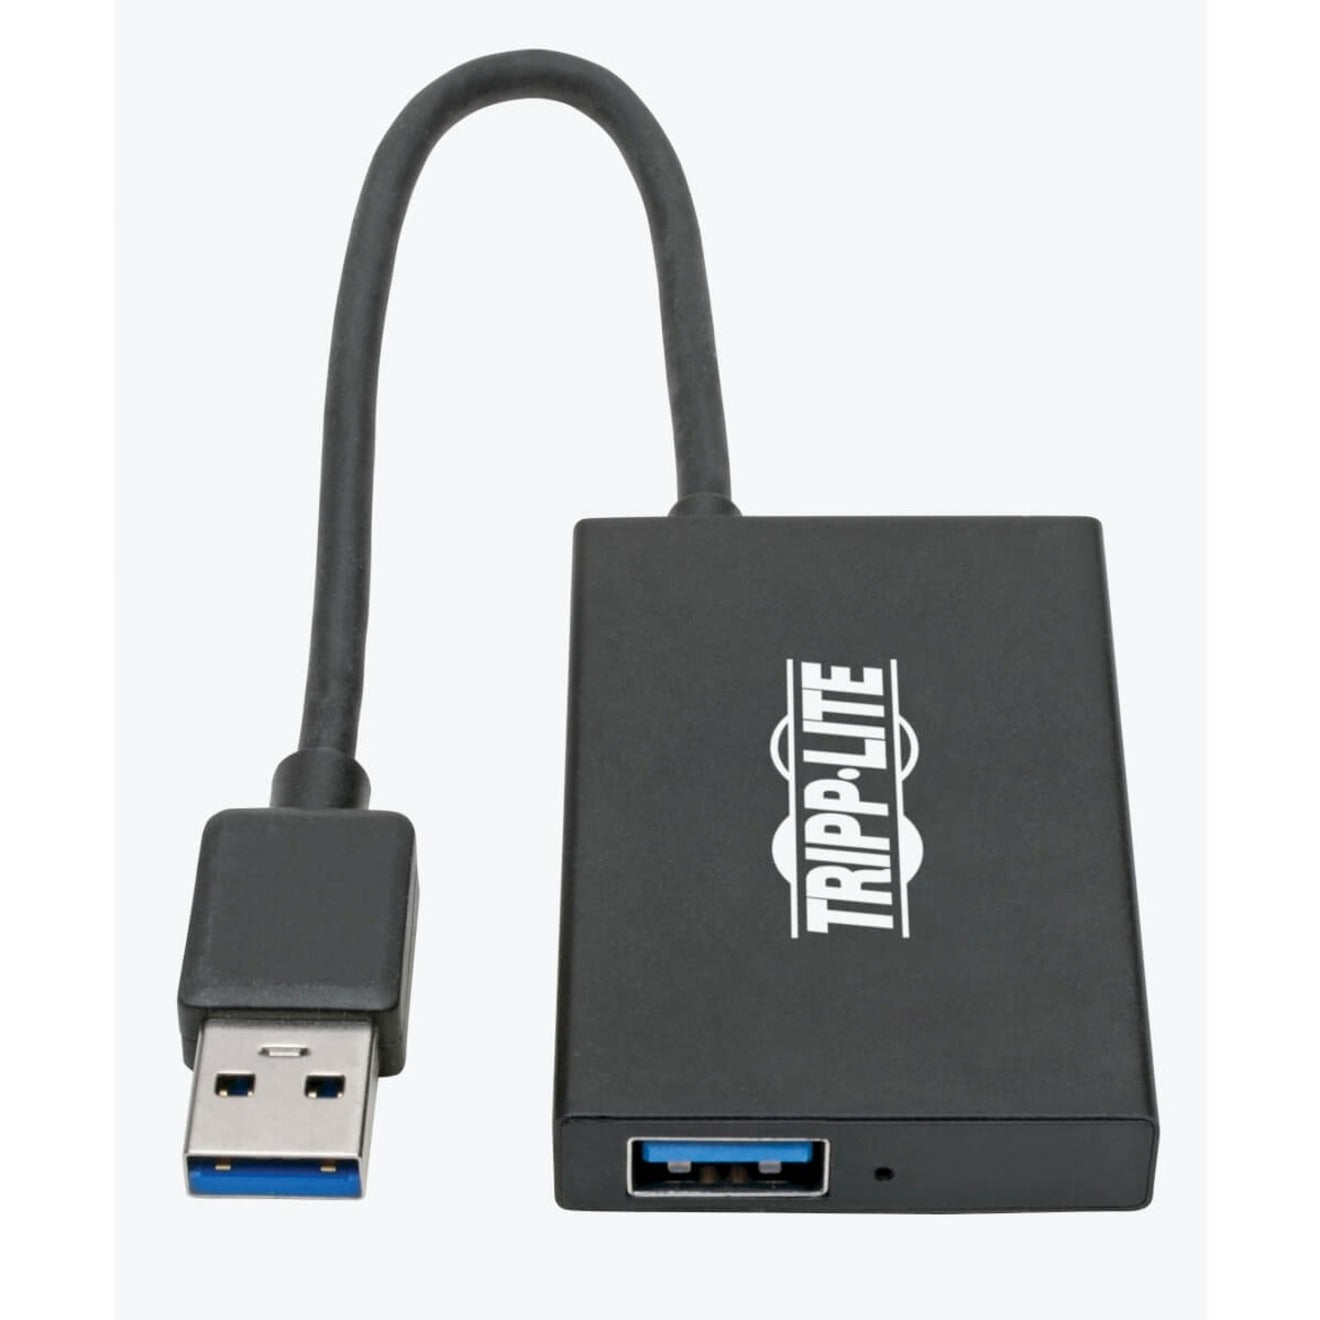 تريب لايت U360-004-4A-AL USB 3.0 سوبر سبيد سليم هاب، 4 منافذ USB-A، محمول، ألومنيوم